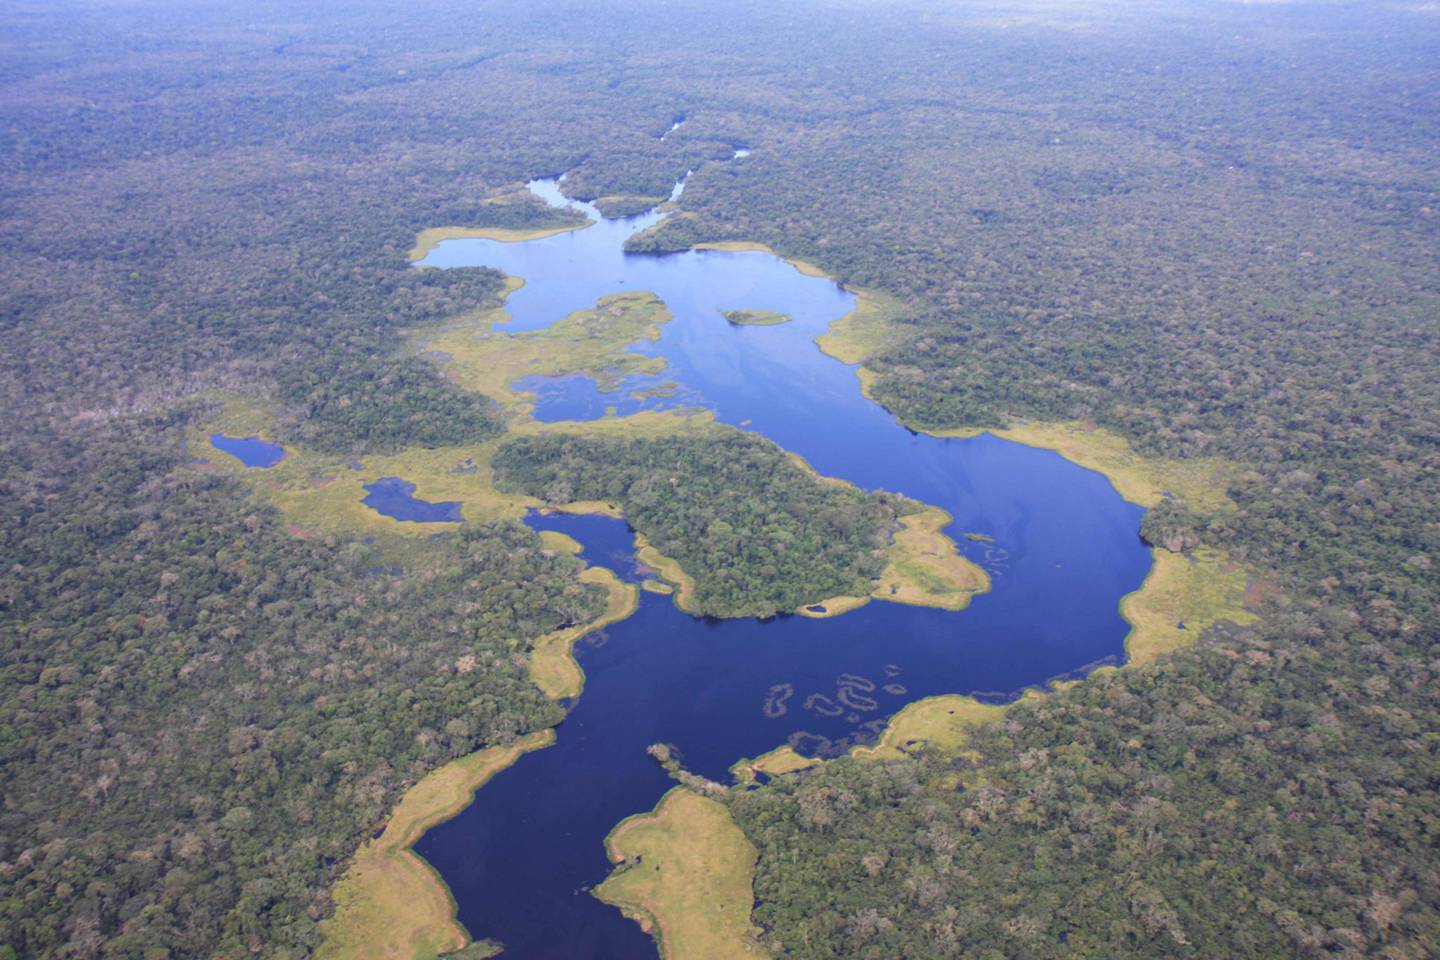 El Parque Nacional Yasuní tiene 1’022.736 hectáreas de extensión y fue creado en 1979, además fue declarado Reserva de Biosfera en 1989 por la Unesco